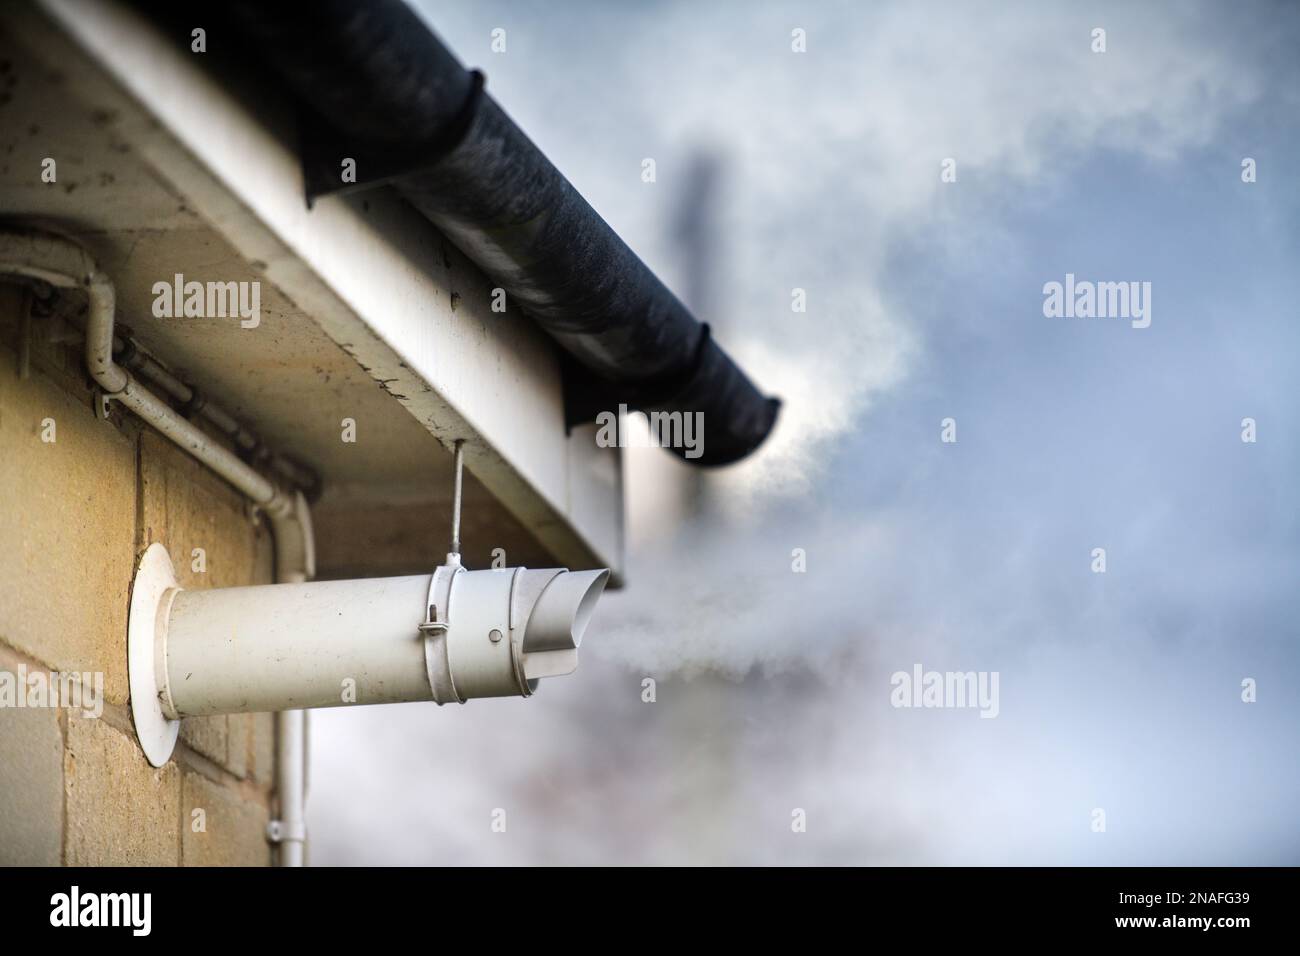 Scarico fumi caldaia immagini e fotografie stock ad alta risoluzione - Alamy